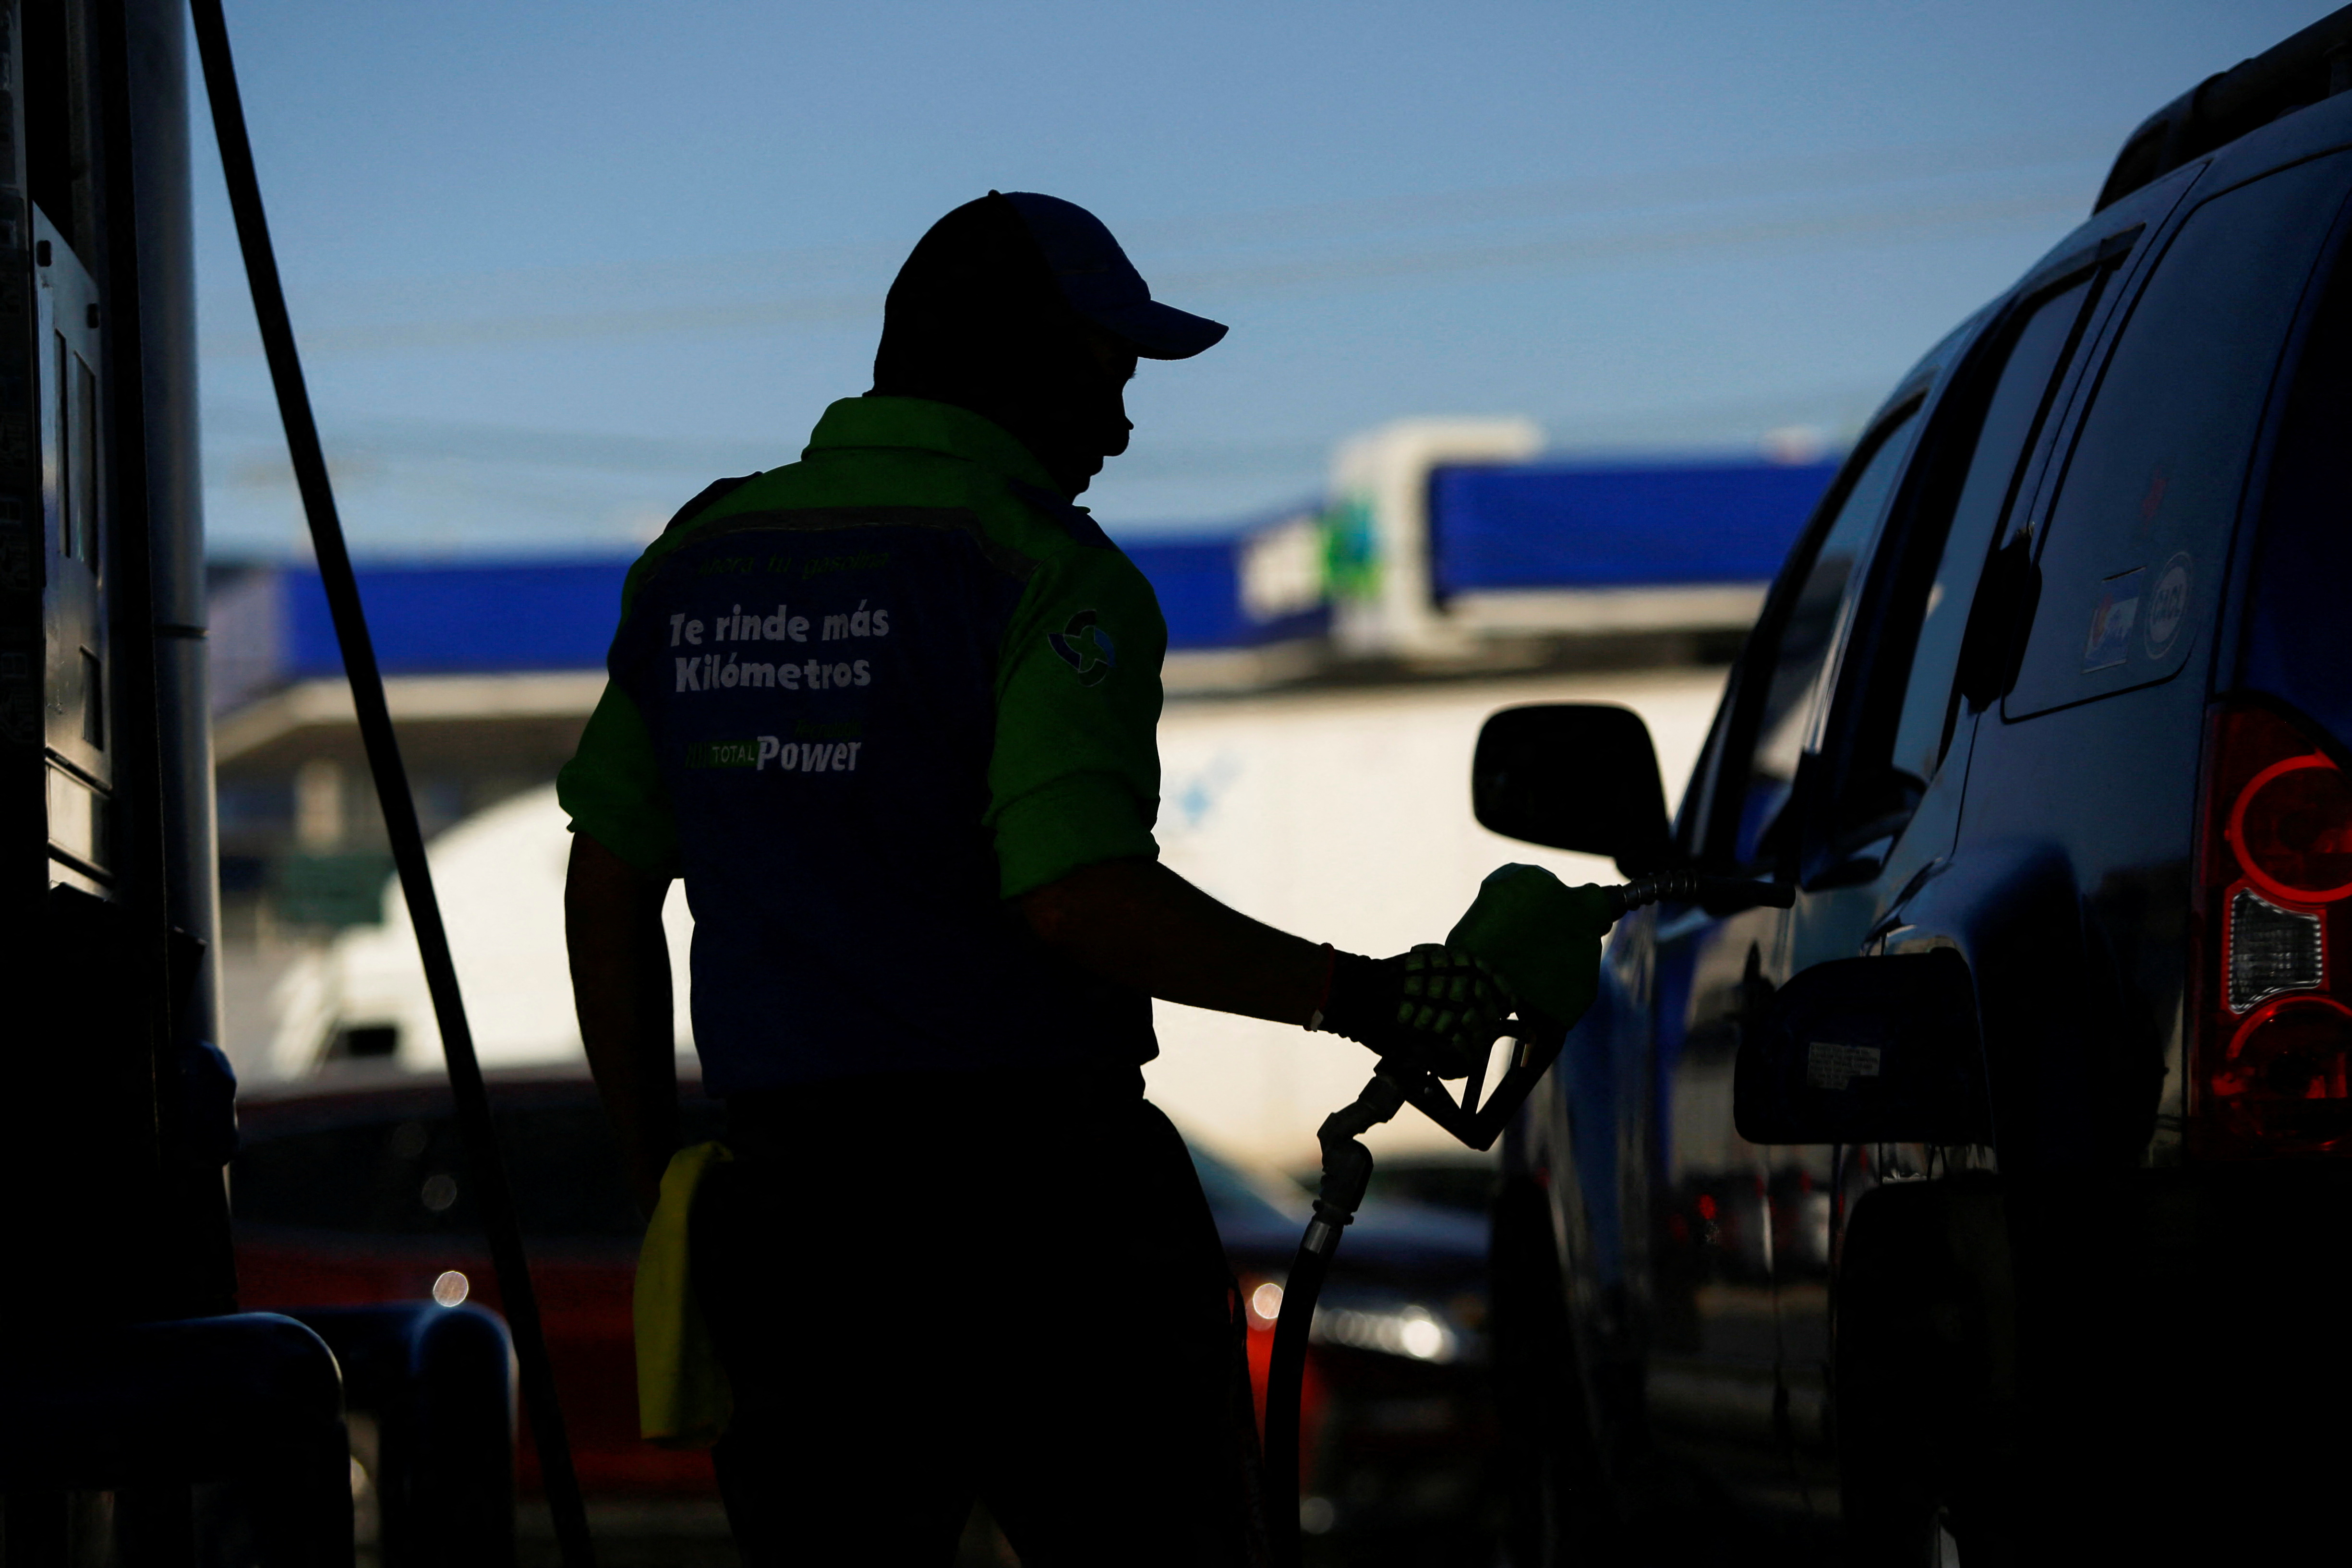 Costo por subsidio a gasolinas en 2022 superó al presupuesto de seguridad en México